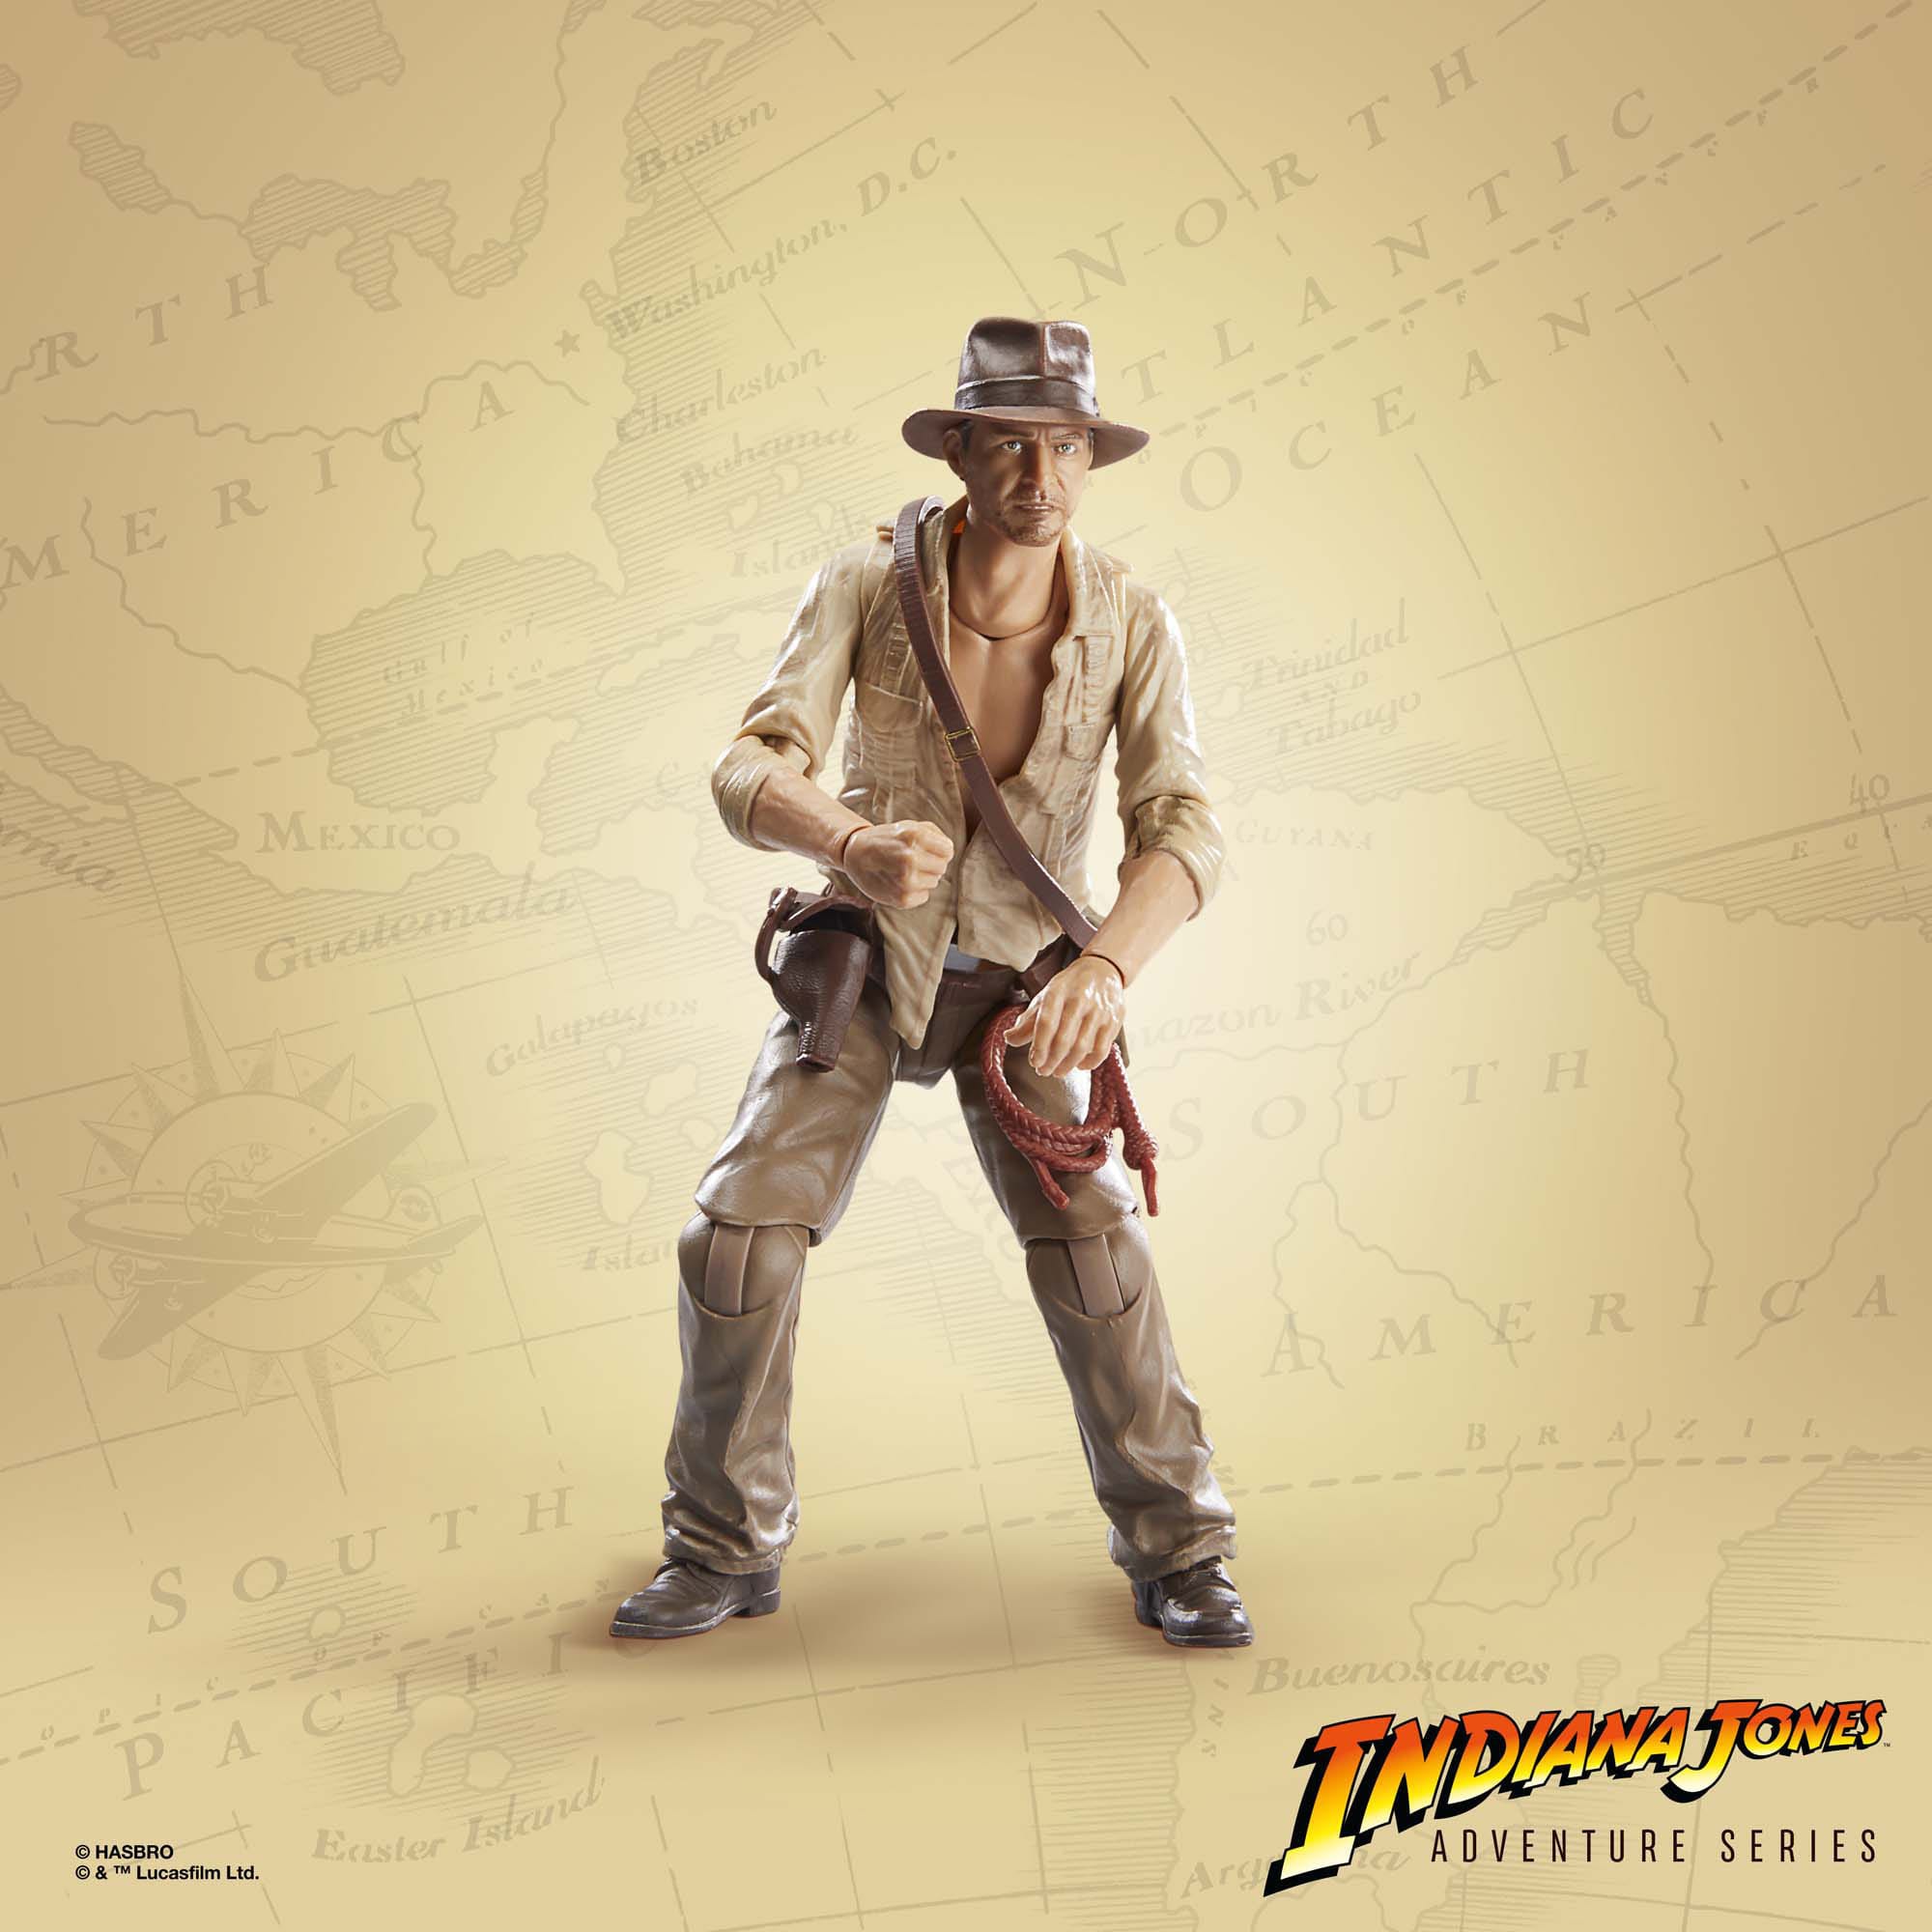 Indiana Jones Adventure Series Actionfigur Indiana Jones (Cairo) (Jäger des verlorenen Schatzes) 15 cm F85275L0 5010996176639